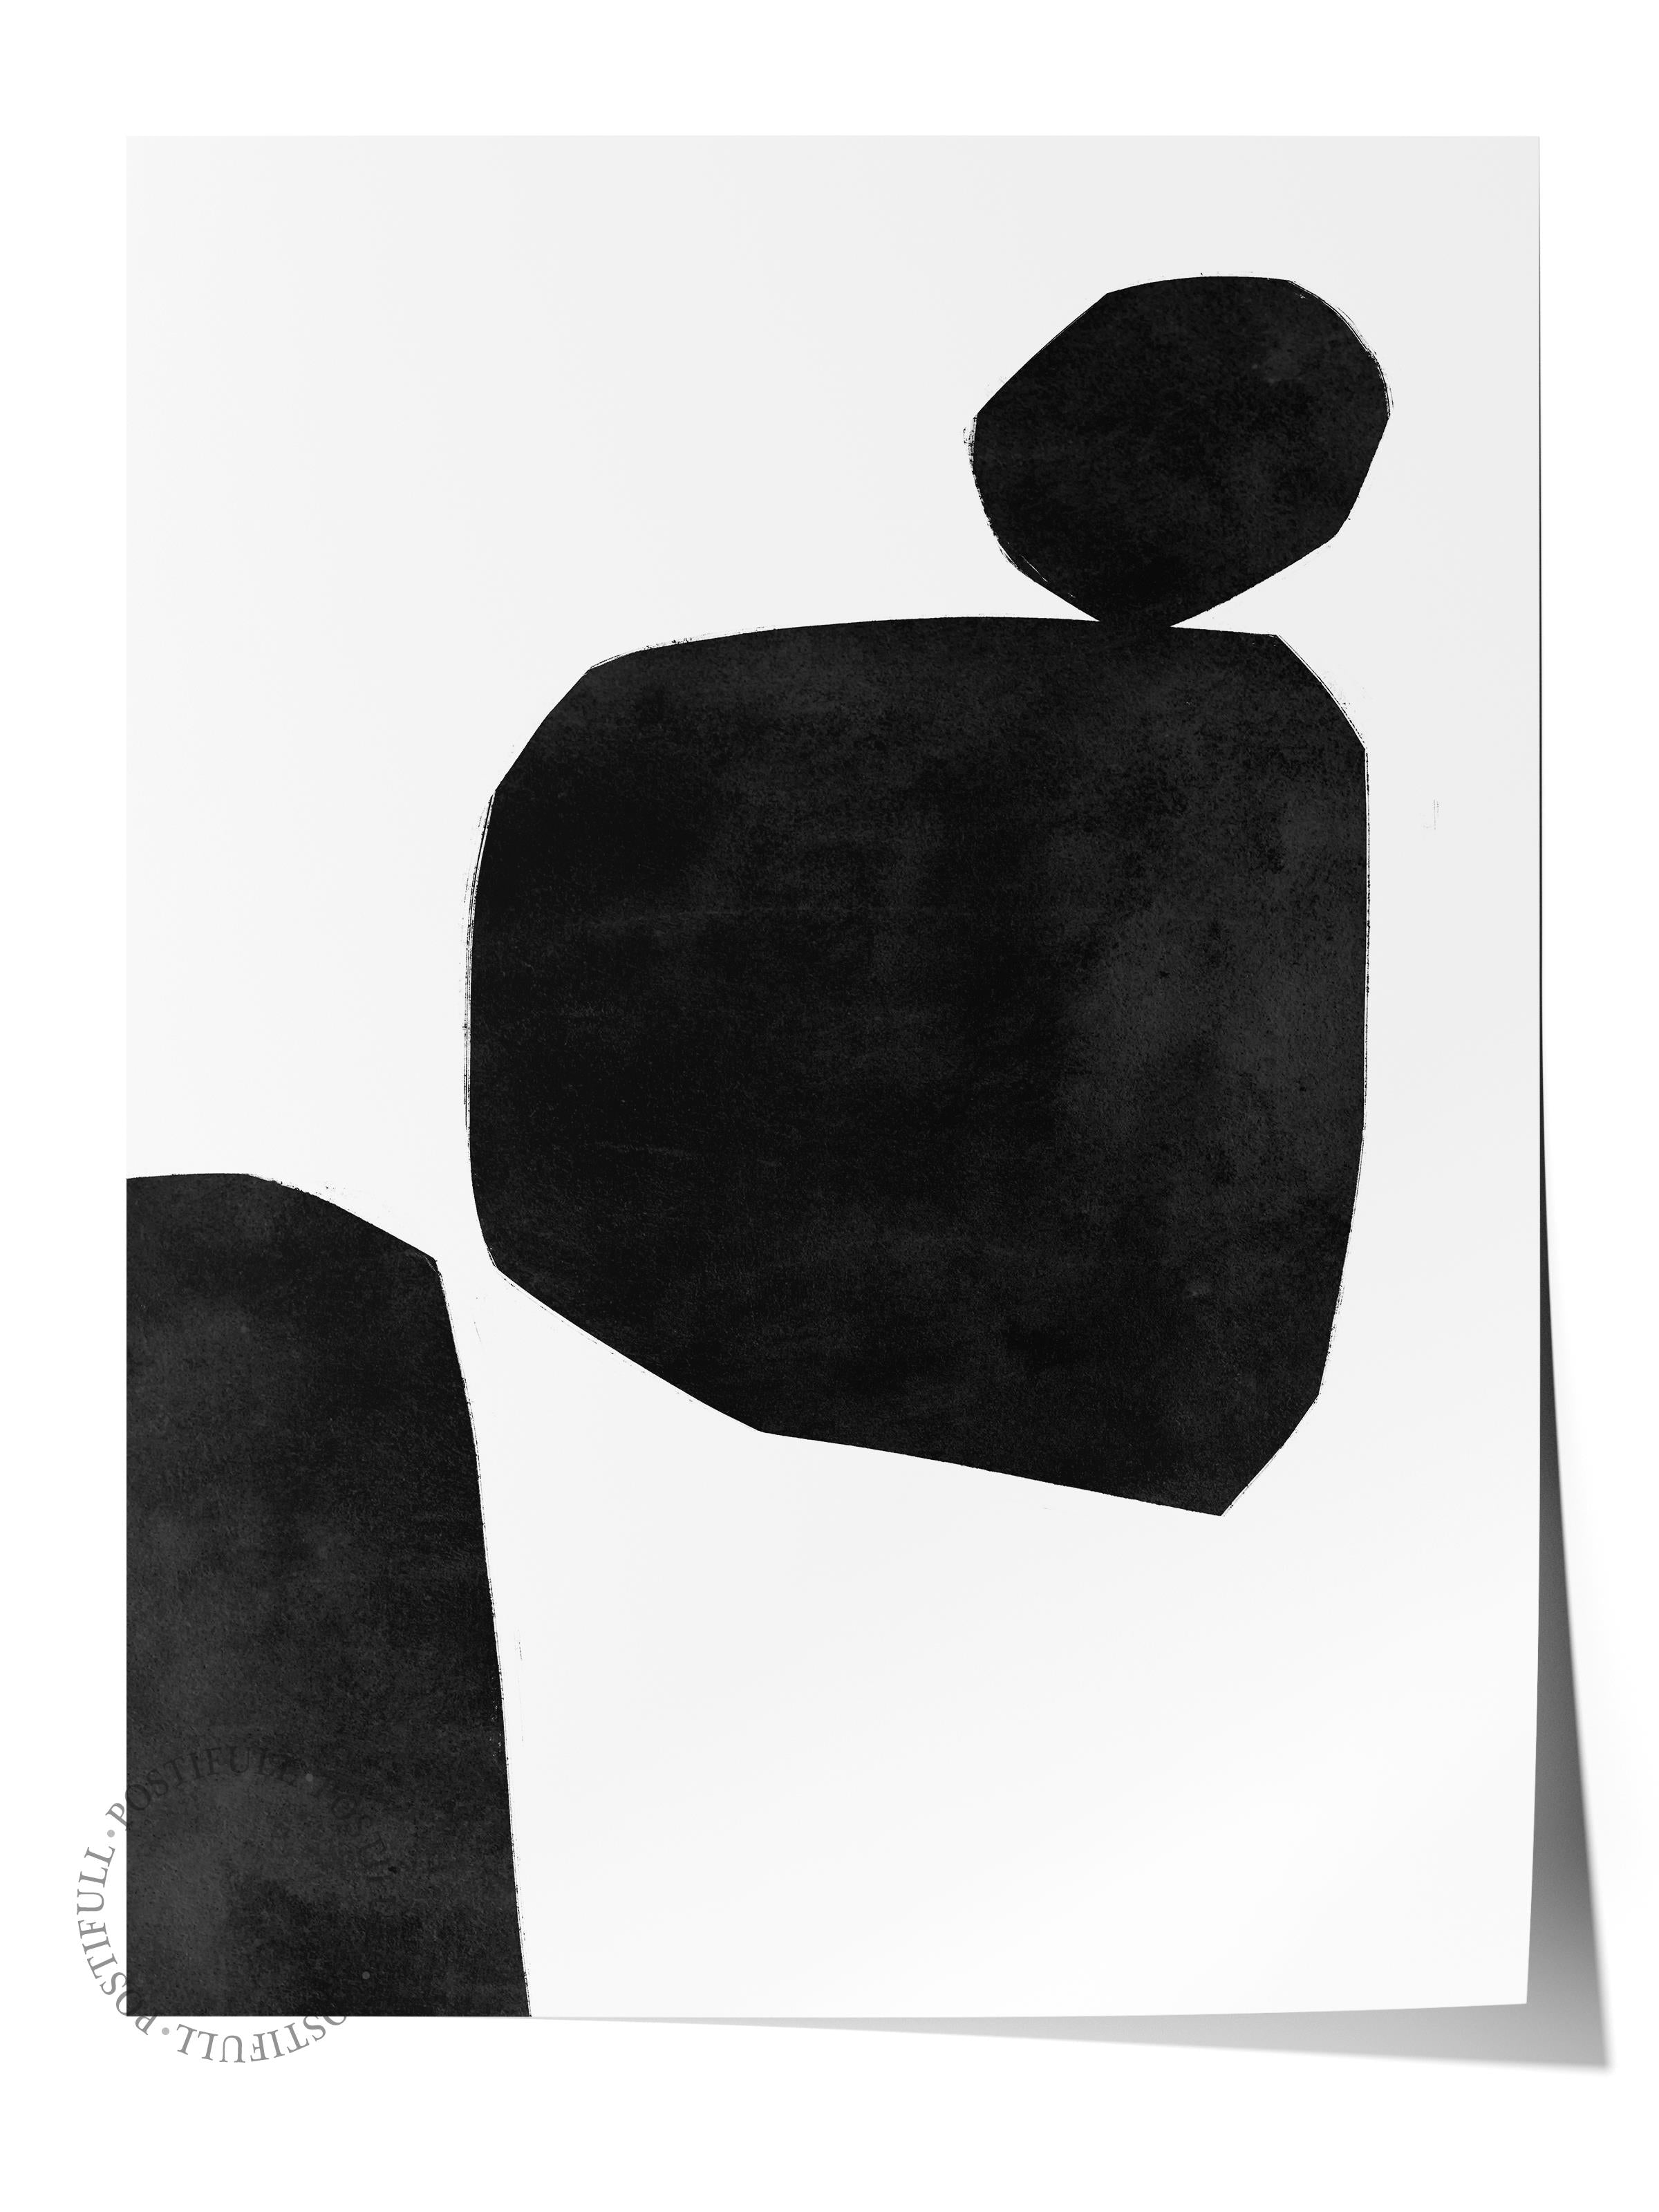 Siyah Beyaz Soyut Temalı Duvar Posteri, Modern Çerçevesiz Poster - Yatak Odası, Salon Duvar Dekoru